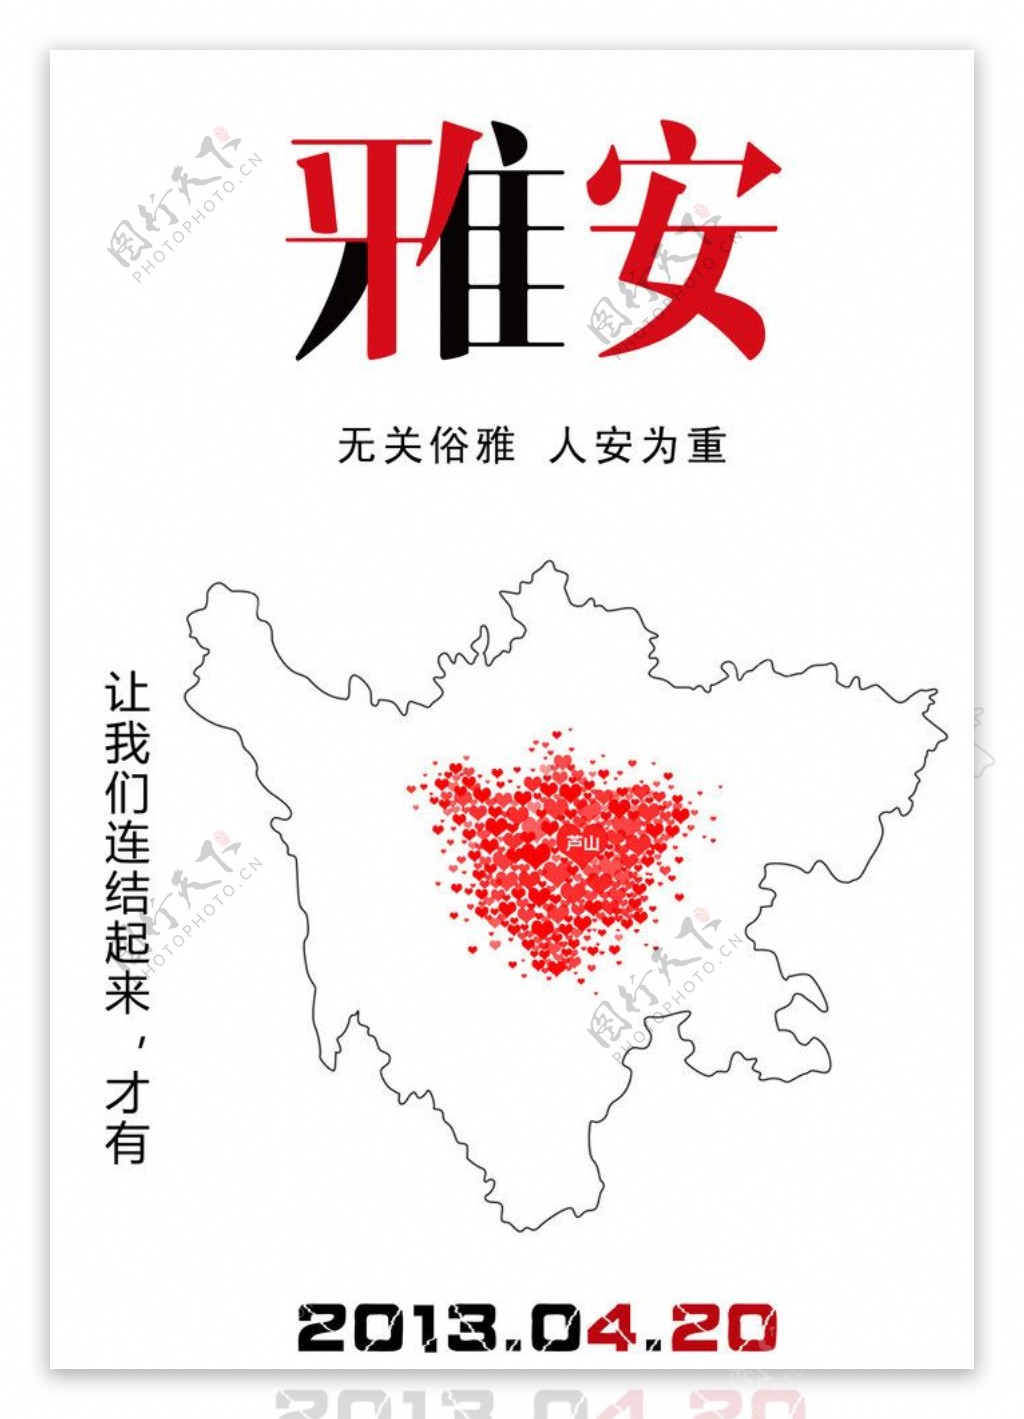 雅安芦山地震海报图片